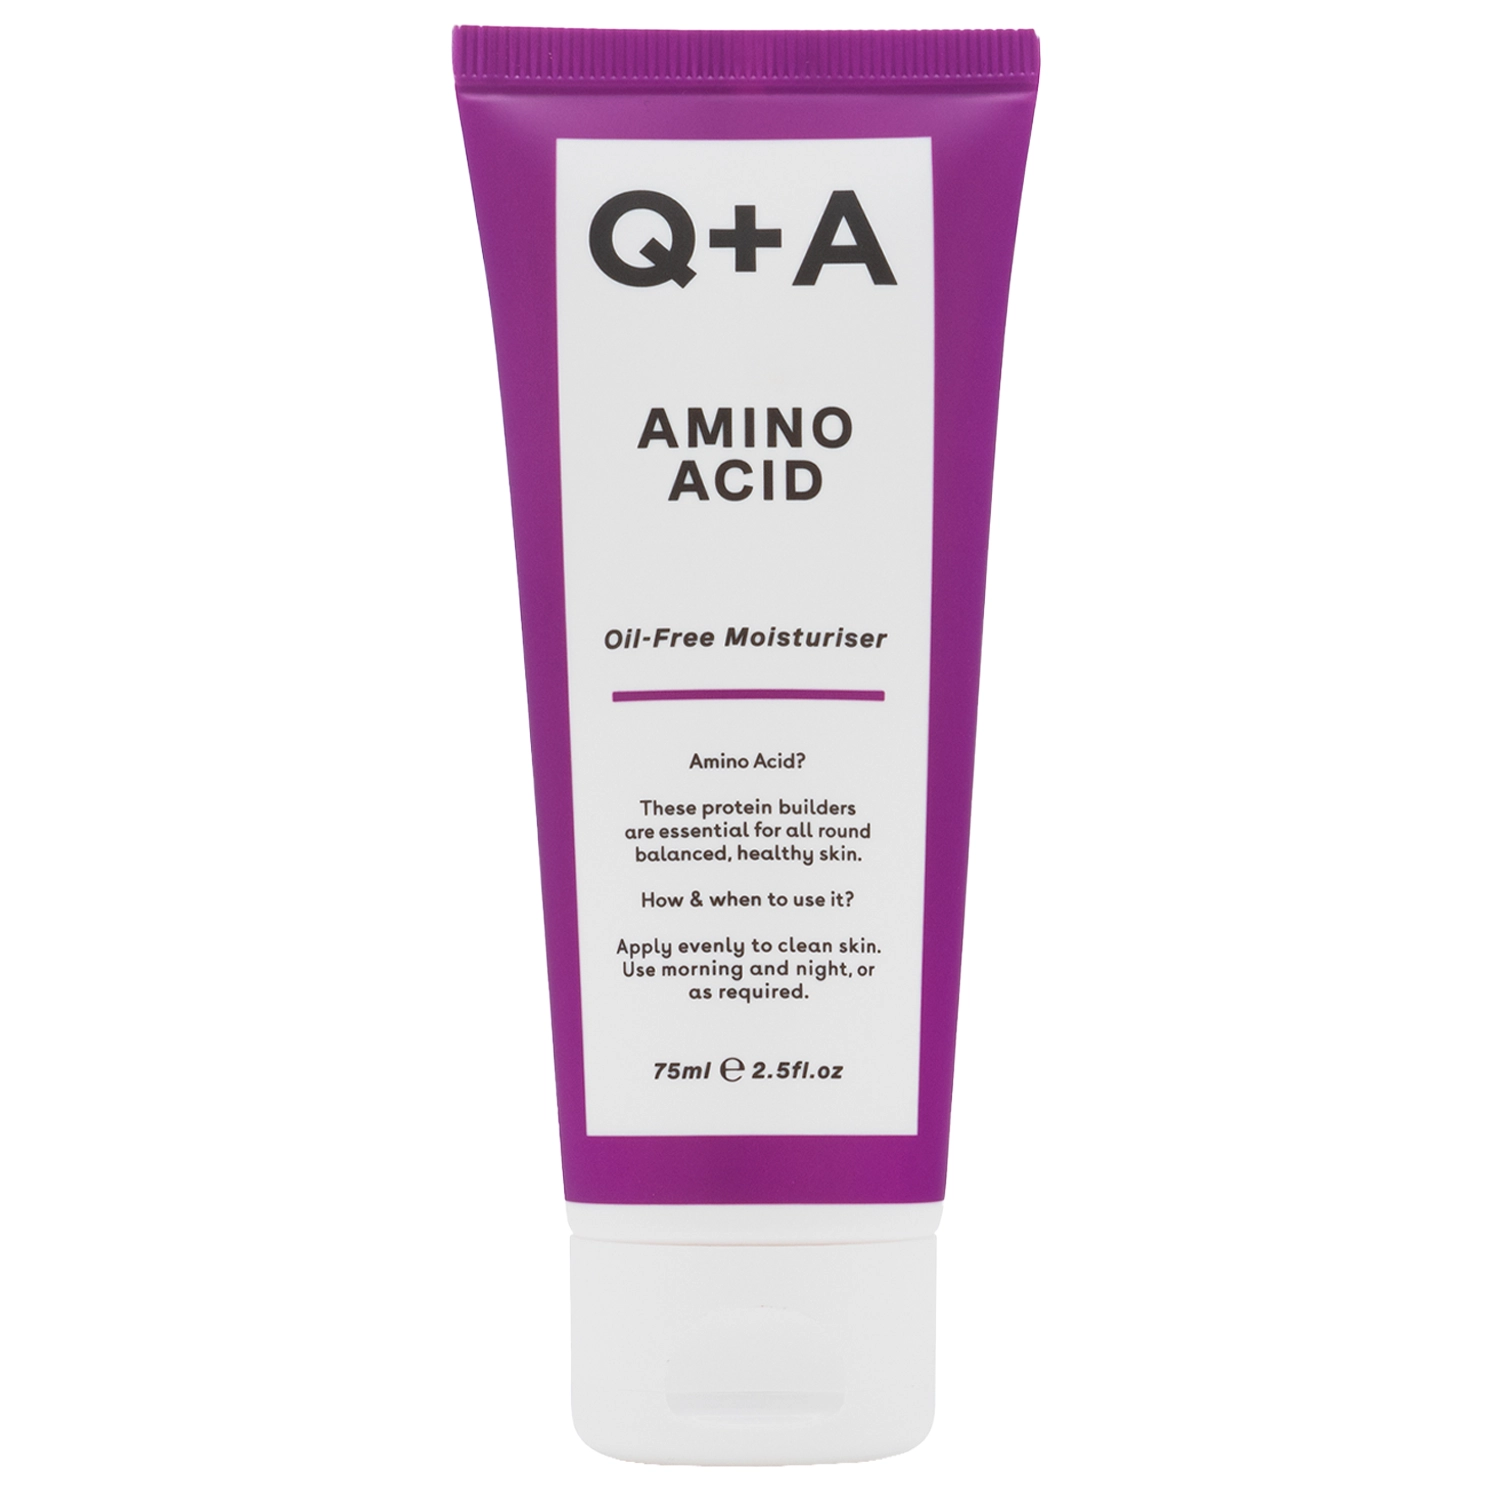 Q+A - Amino Acid Oil-Free Moisturiser- Ölfreie Feuchtigkeitscreme mit Aminosäure - 75ml